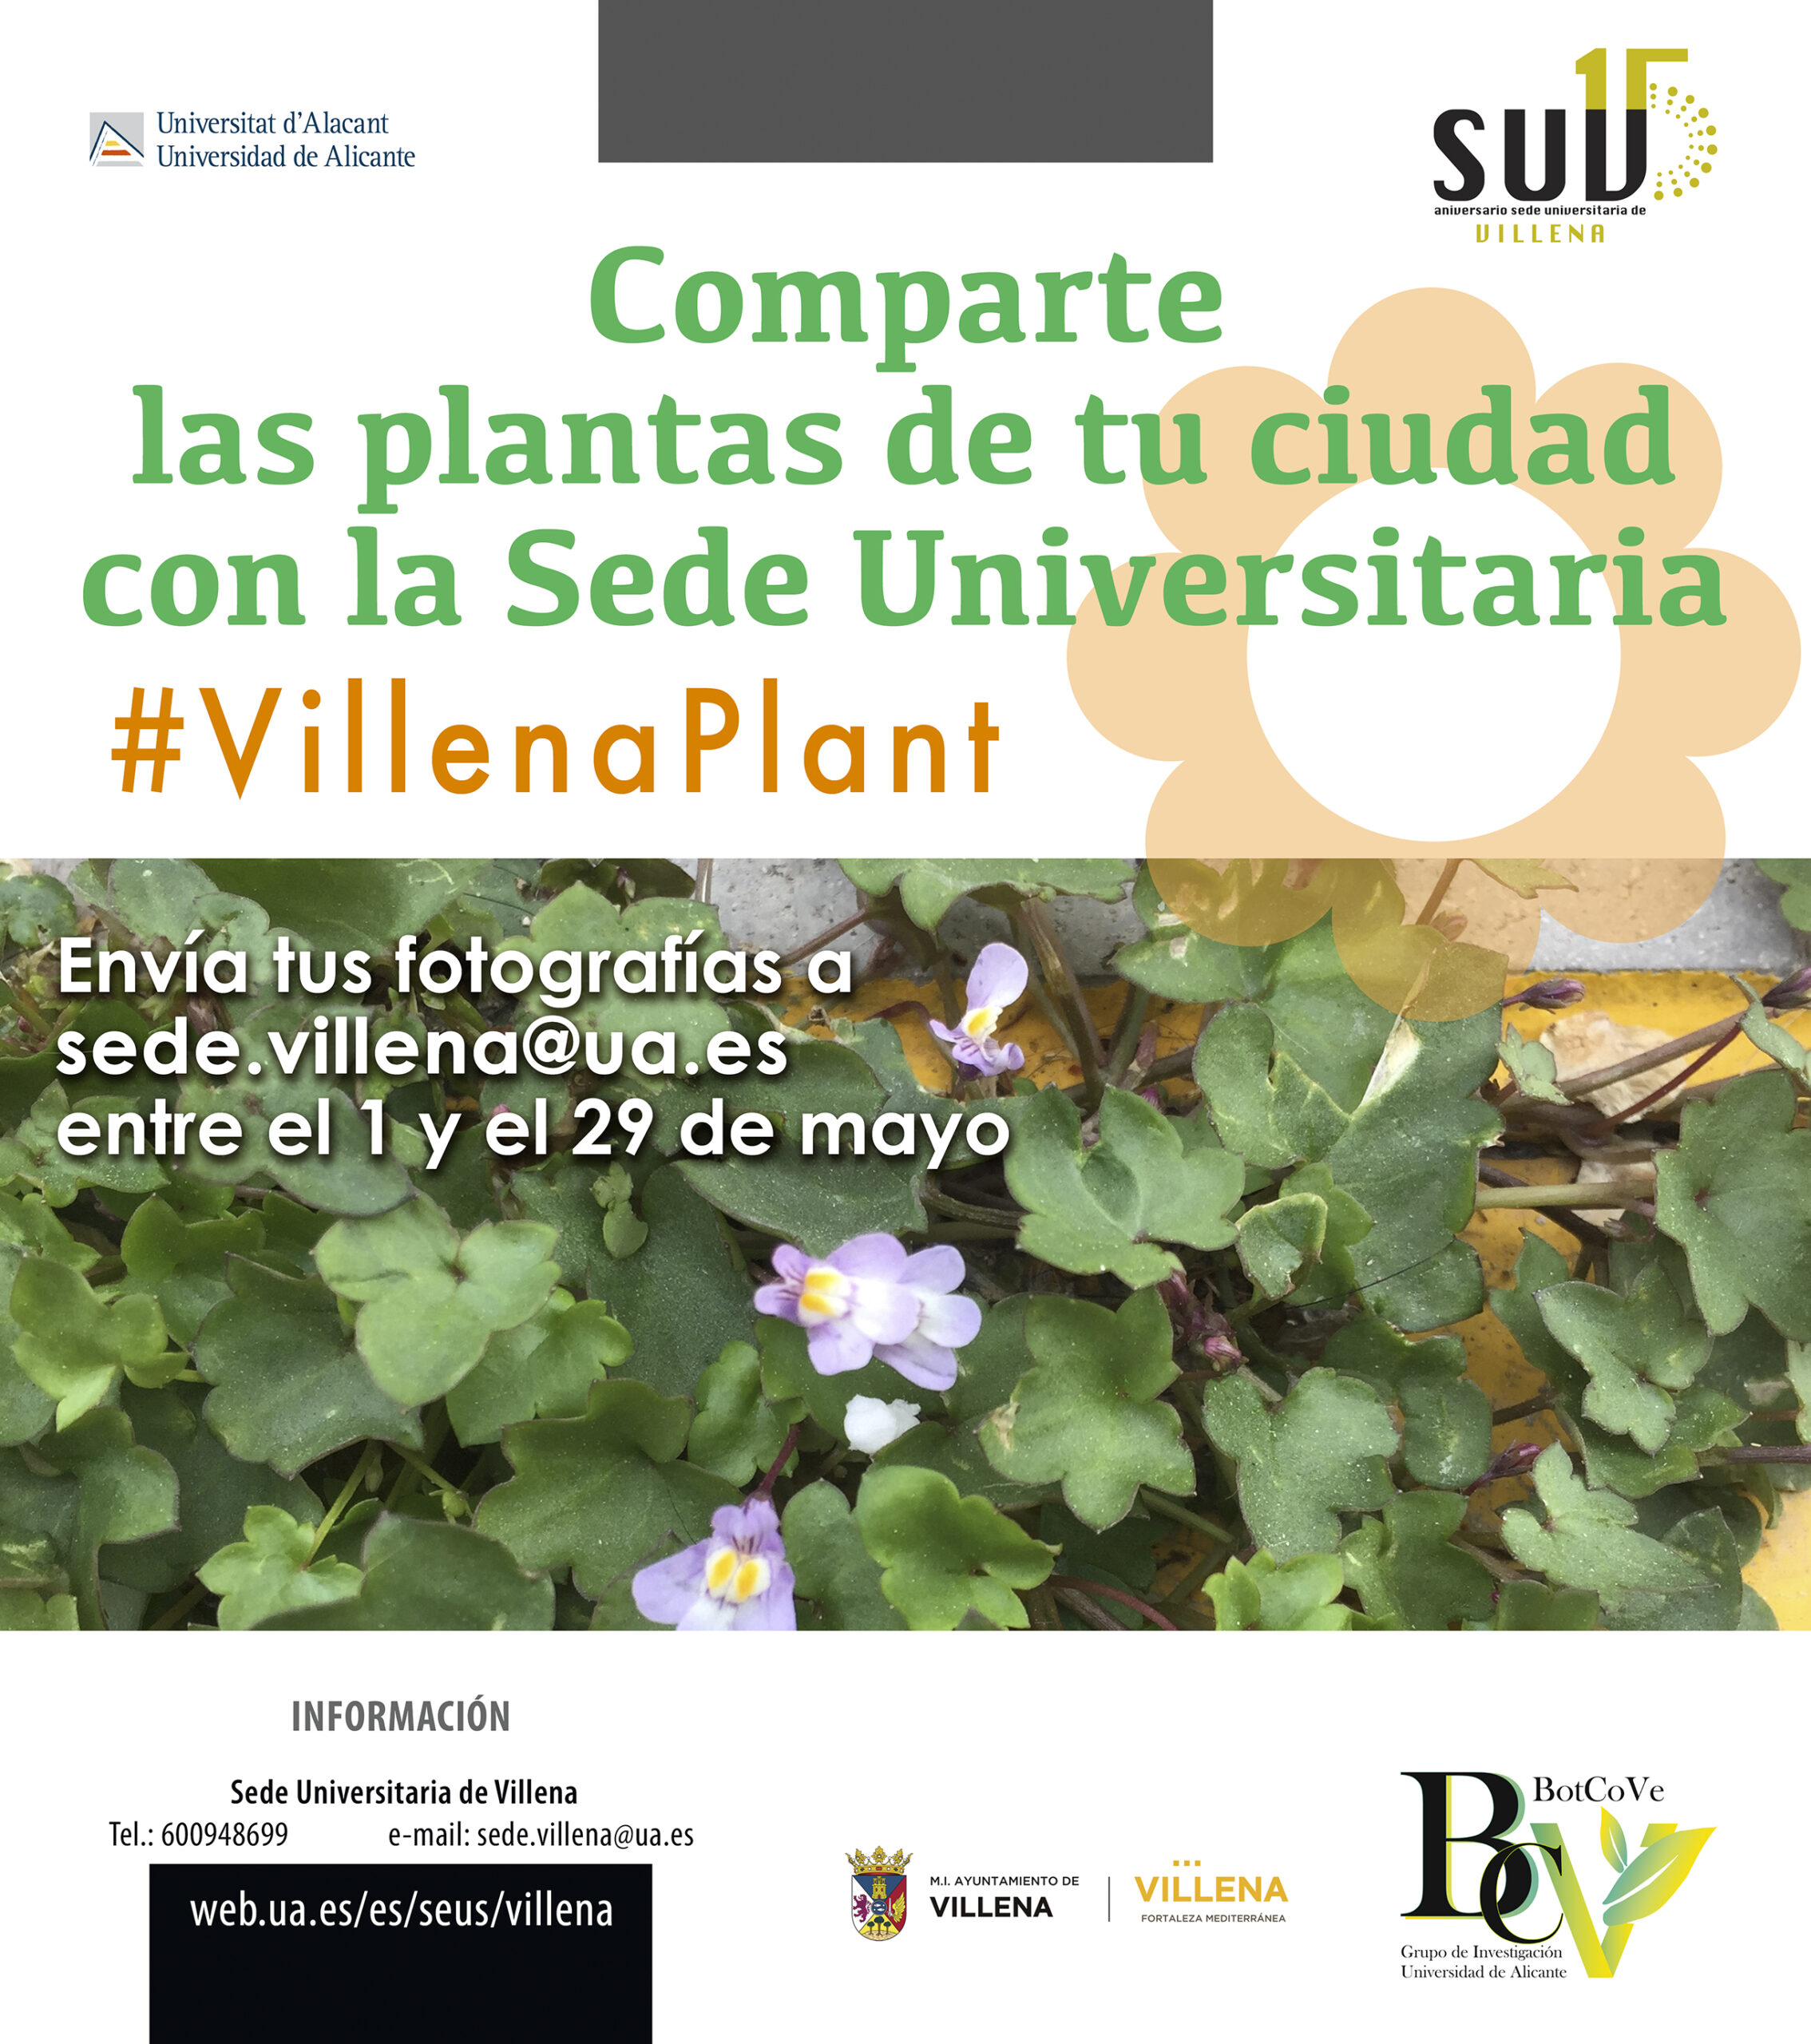 La Sede Universitaria de Villena aúna fotografía y botánica con el reto “Villenaplant”